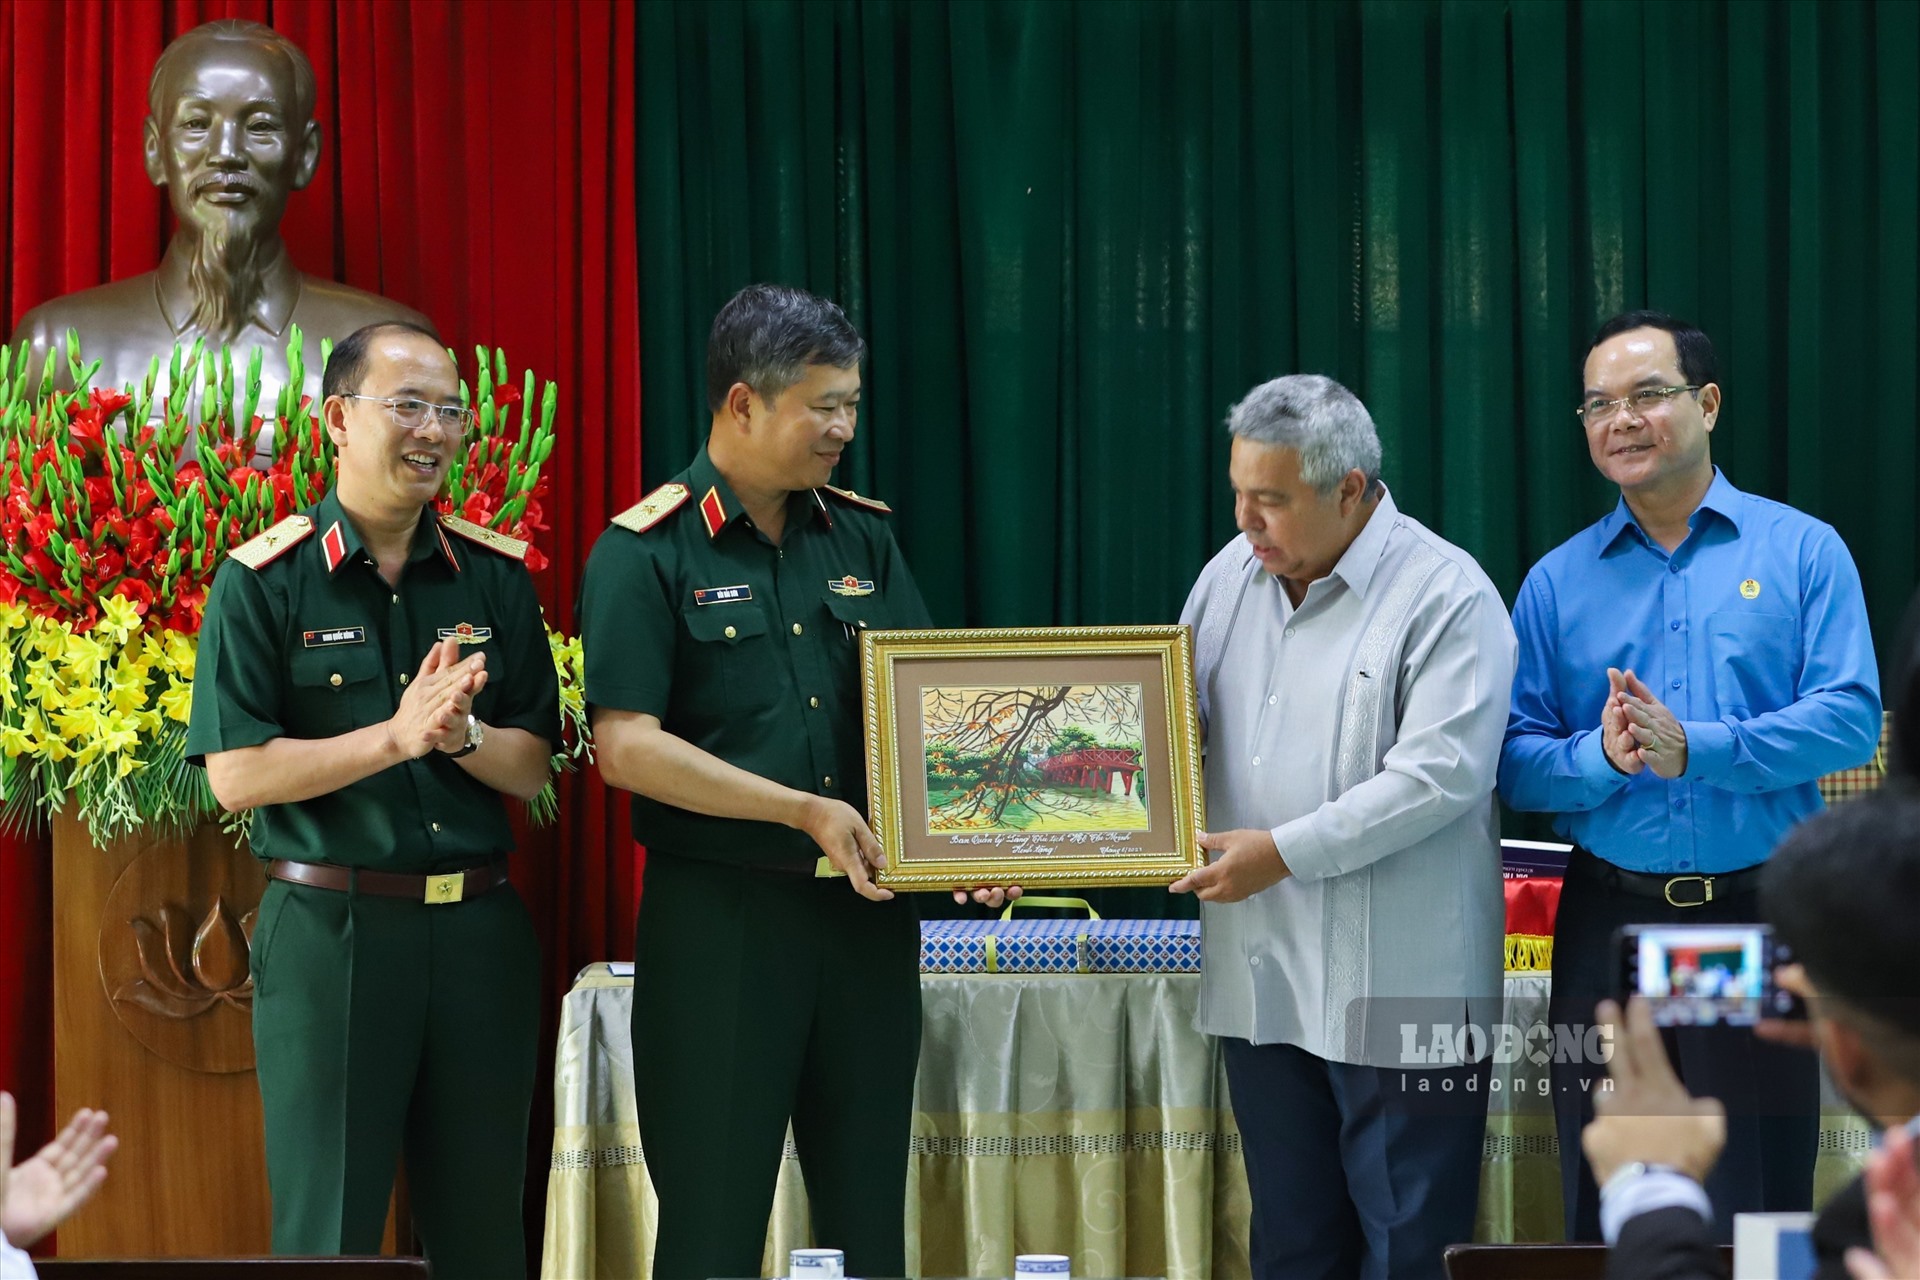 Thiếu tướng Bùi Hải Sơn trao tặng bức tranh phong cảnh Thủ đô Hà Nội. Ảnh: Tô Thế